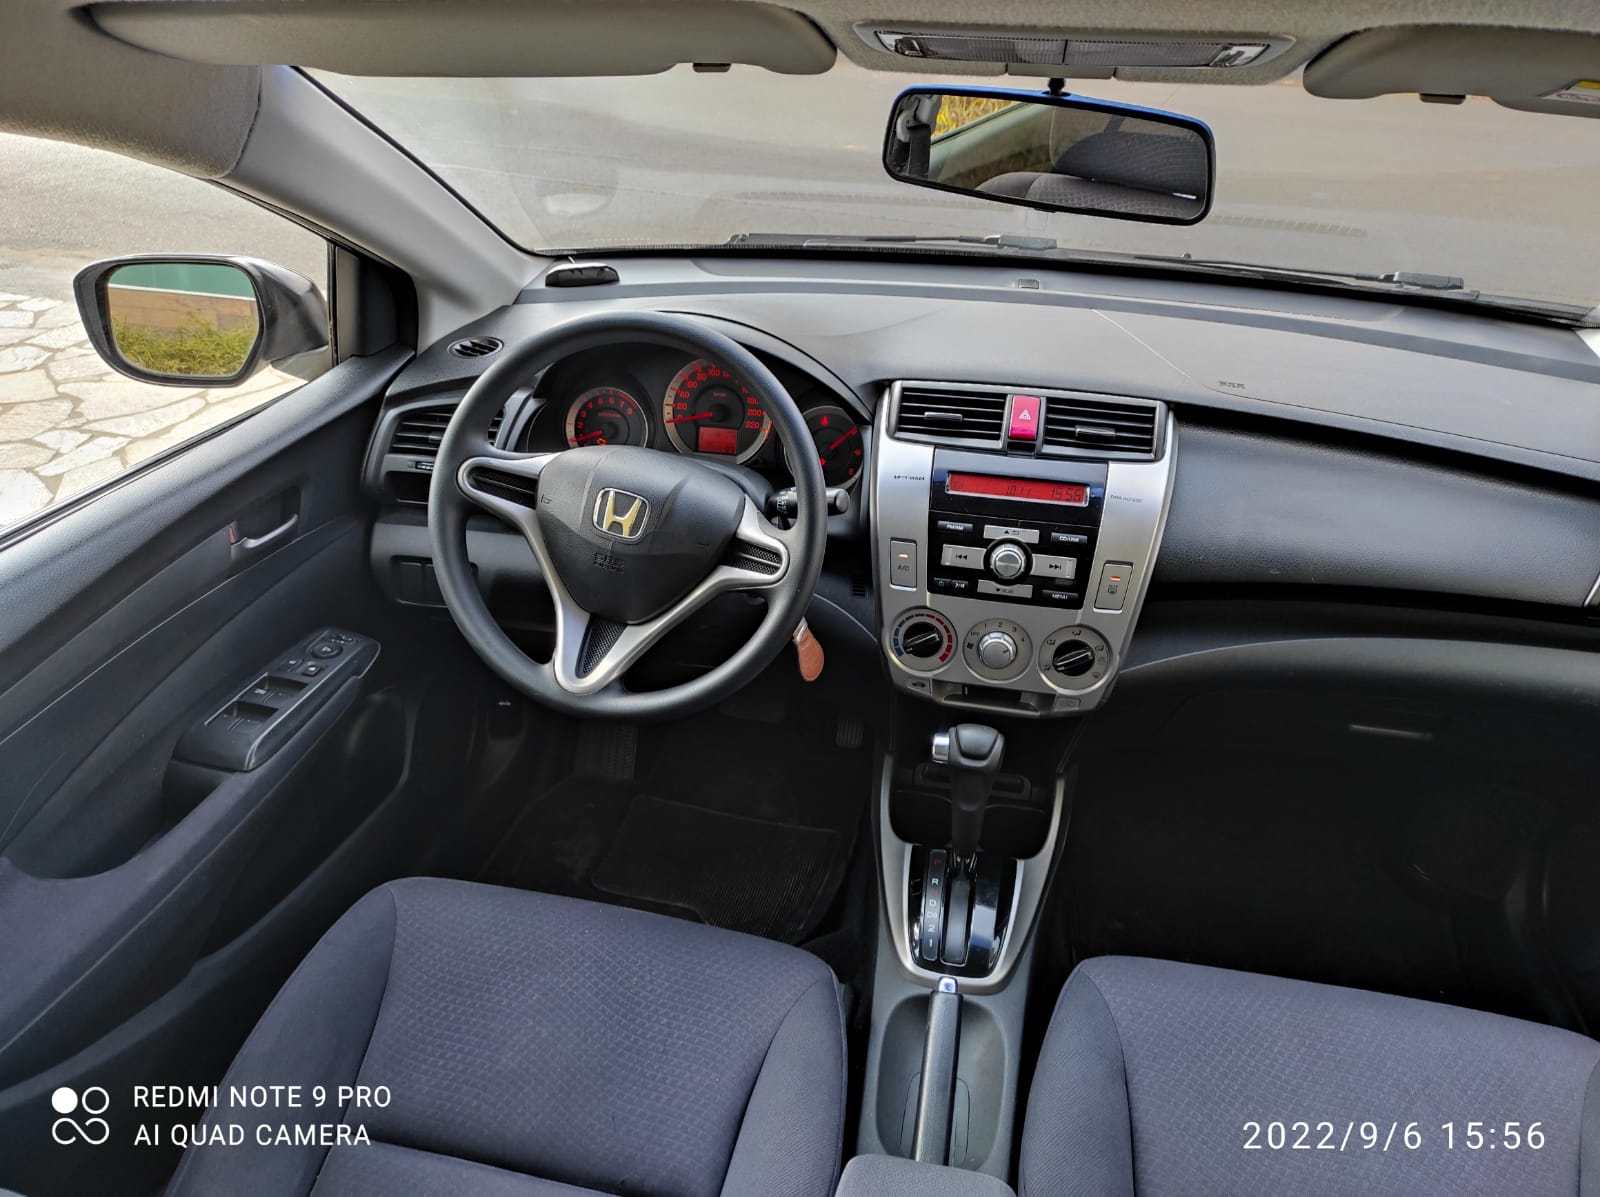 Honda City LX 2010 completo – impecável